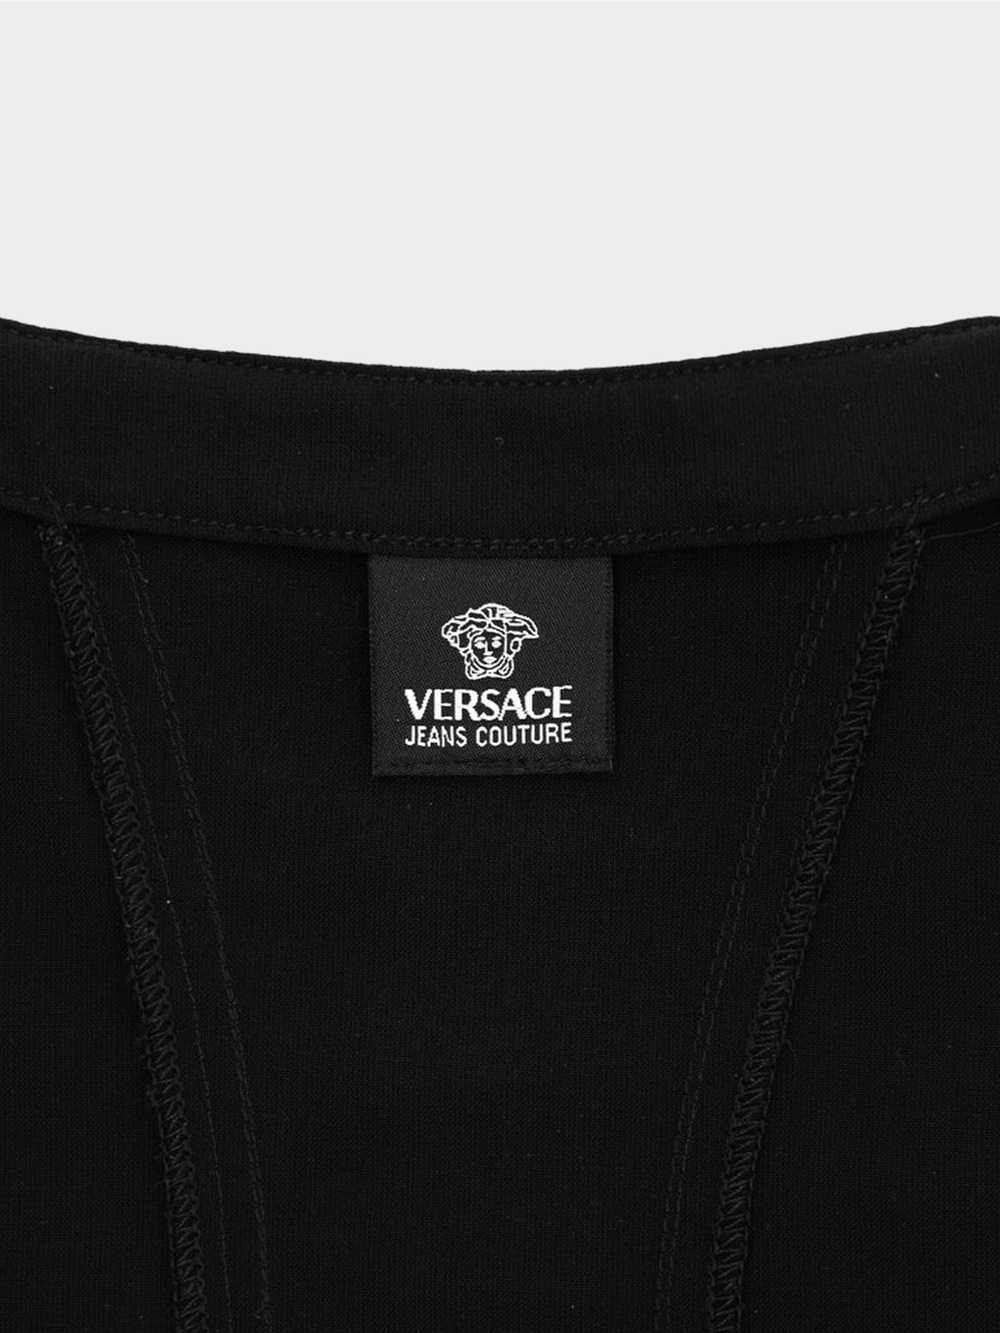 Versace 2000s Jeans Couture Black Bondage Mini Dr… - image 4